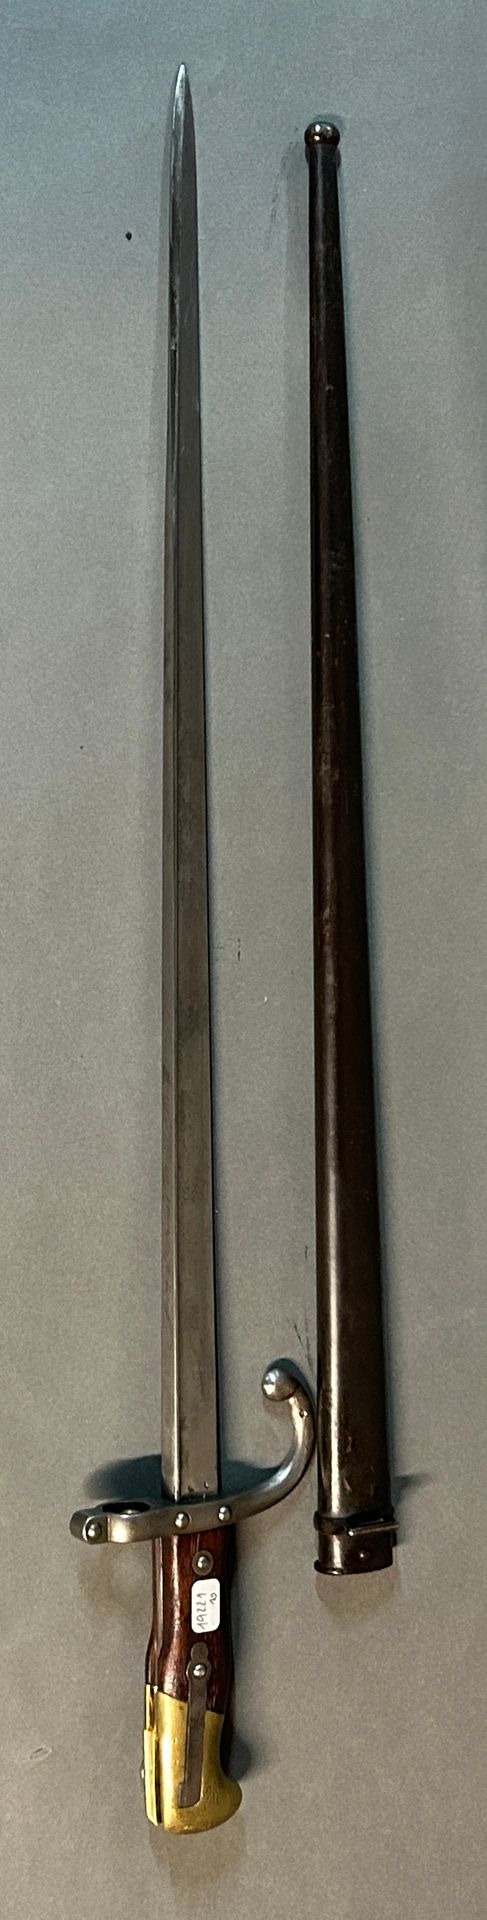 Null Bayoneta modelo 1874 llamada Gras.

Pomo de latón, dos placas de madera rem&hellip;